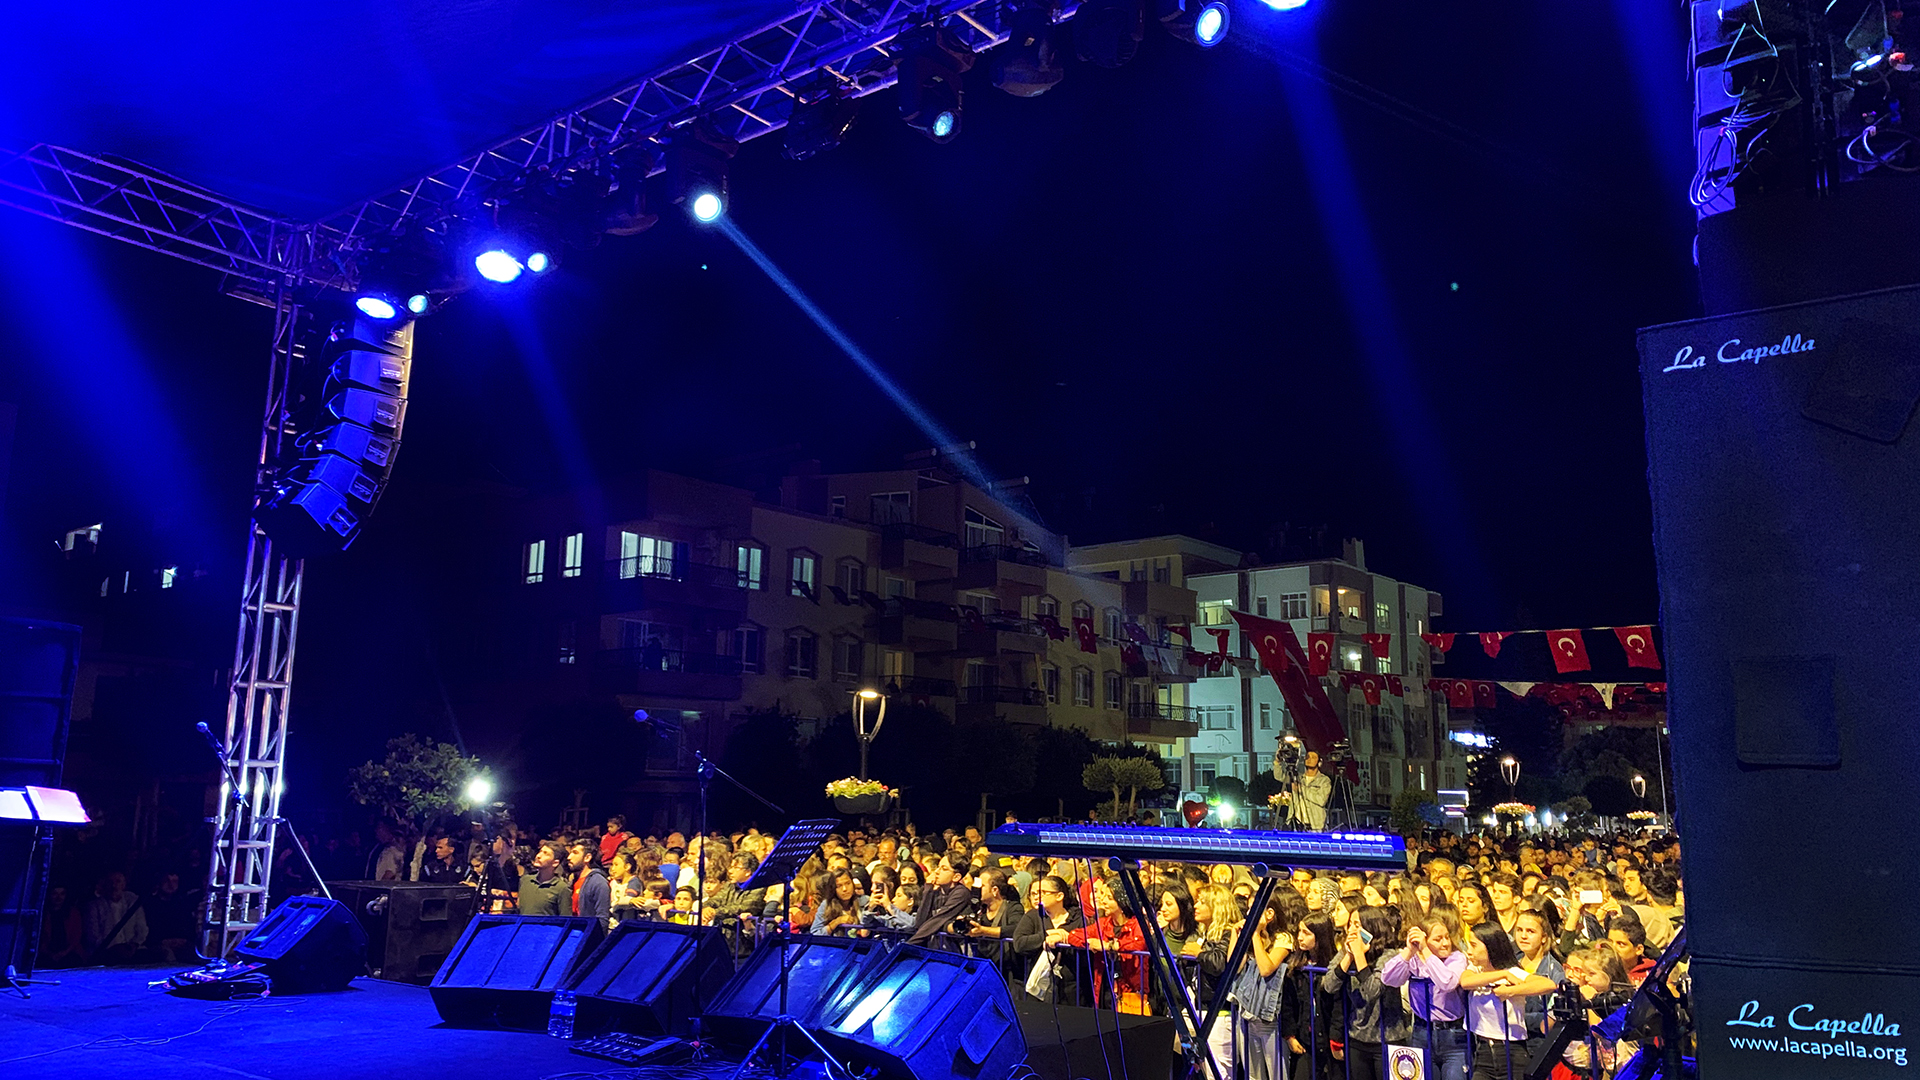 Demre Kekova Festivali 2019